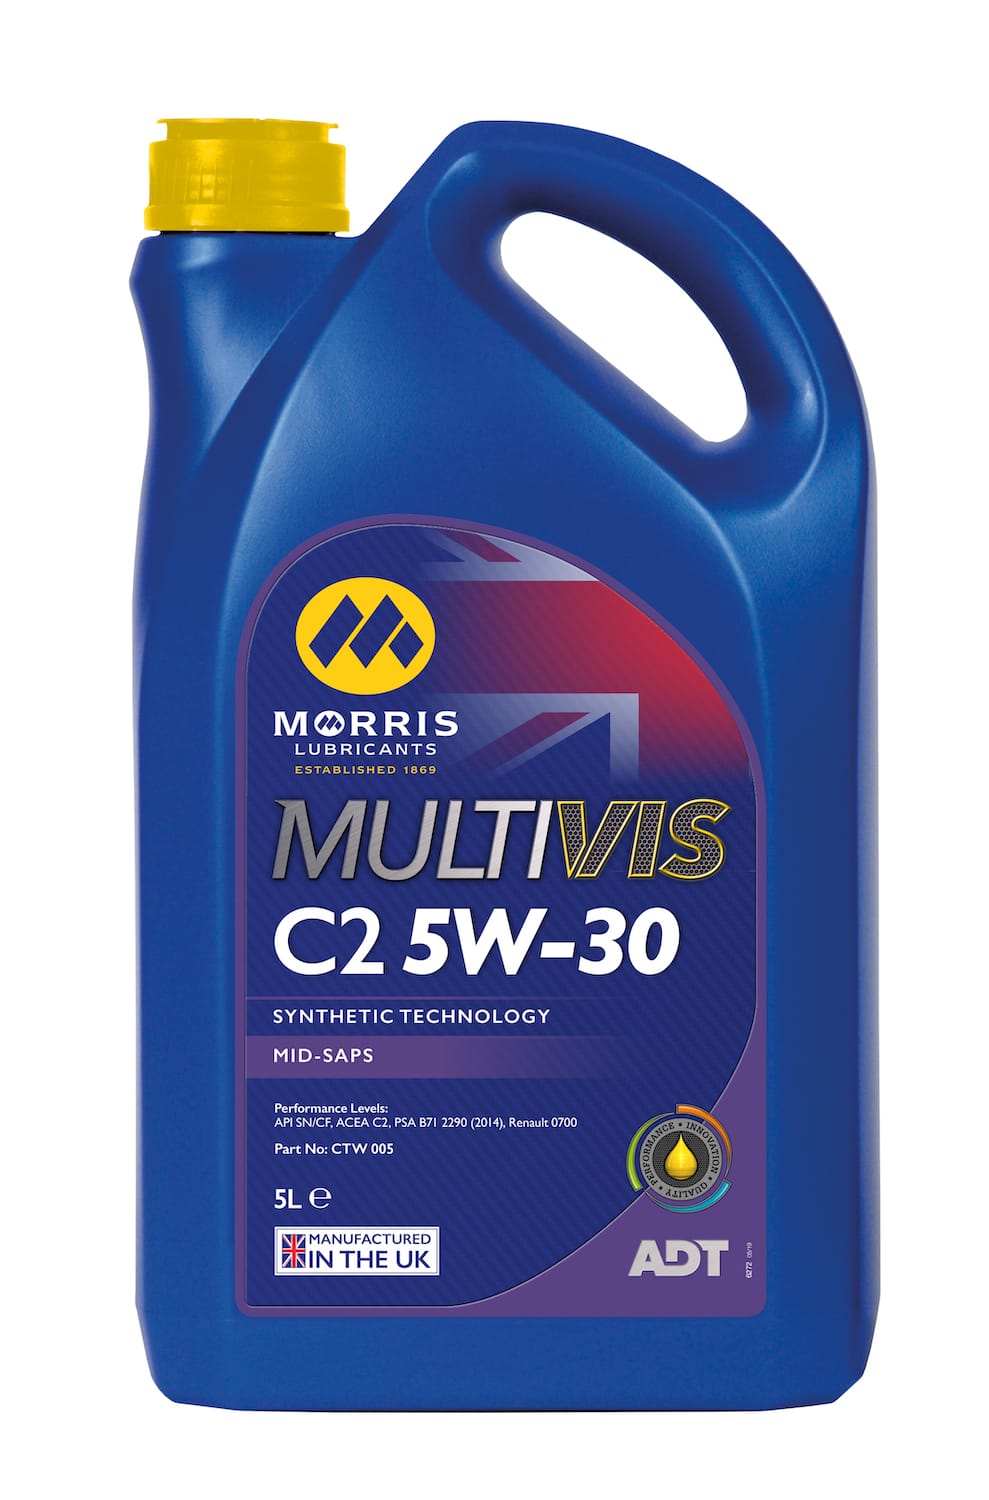 Multivis ADT C2 5W-30